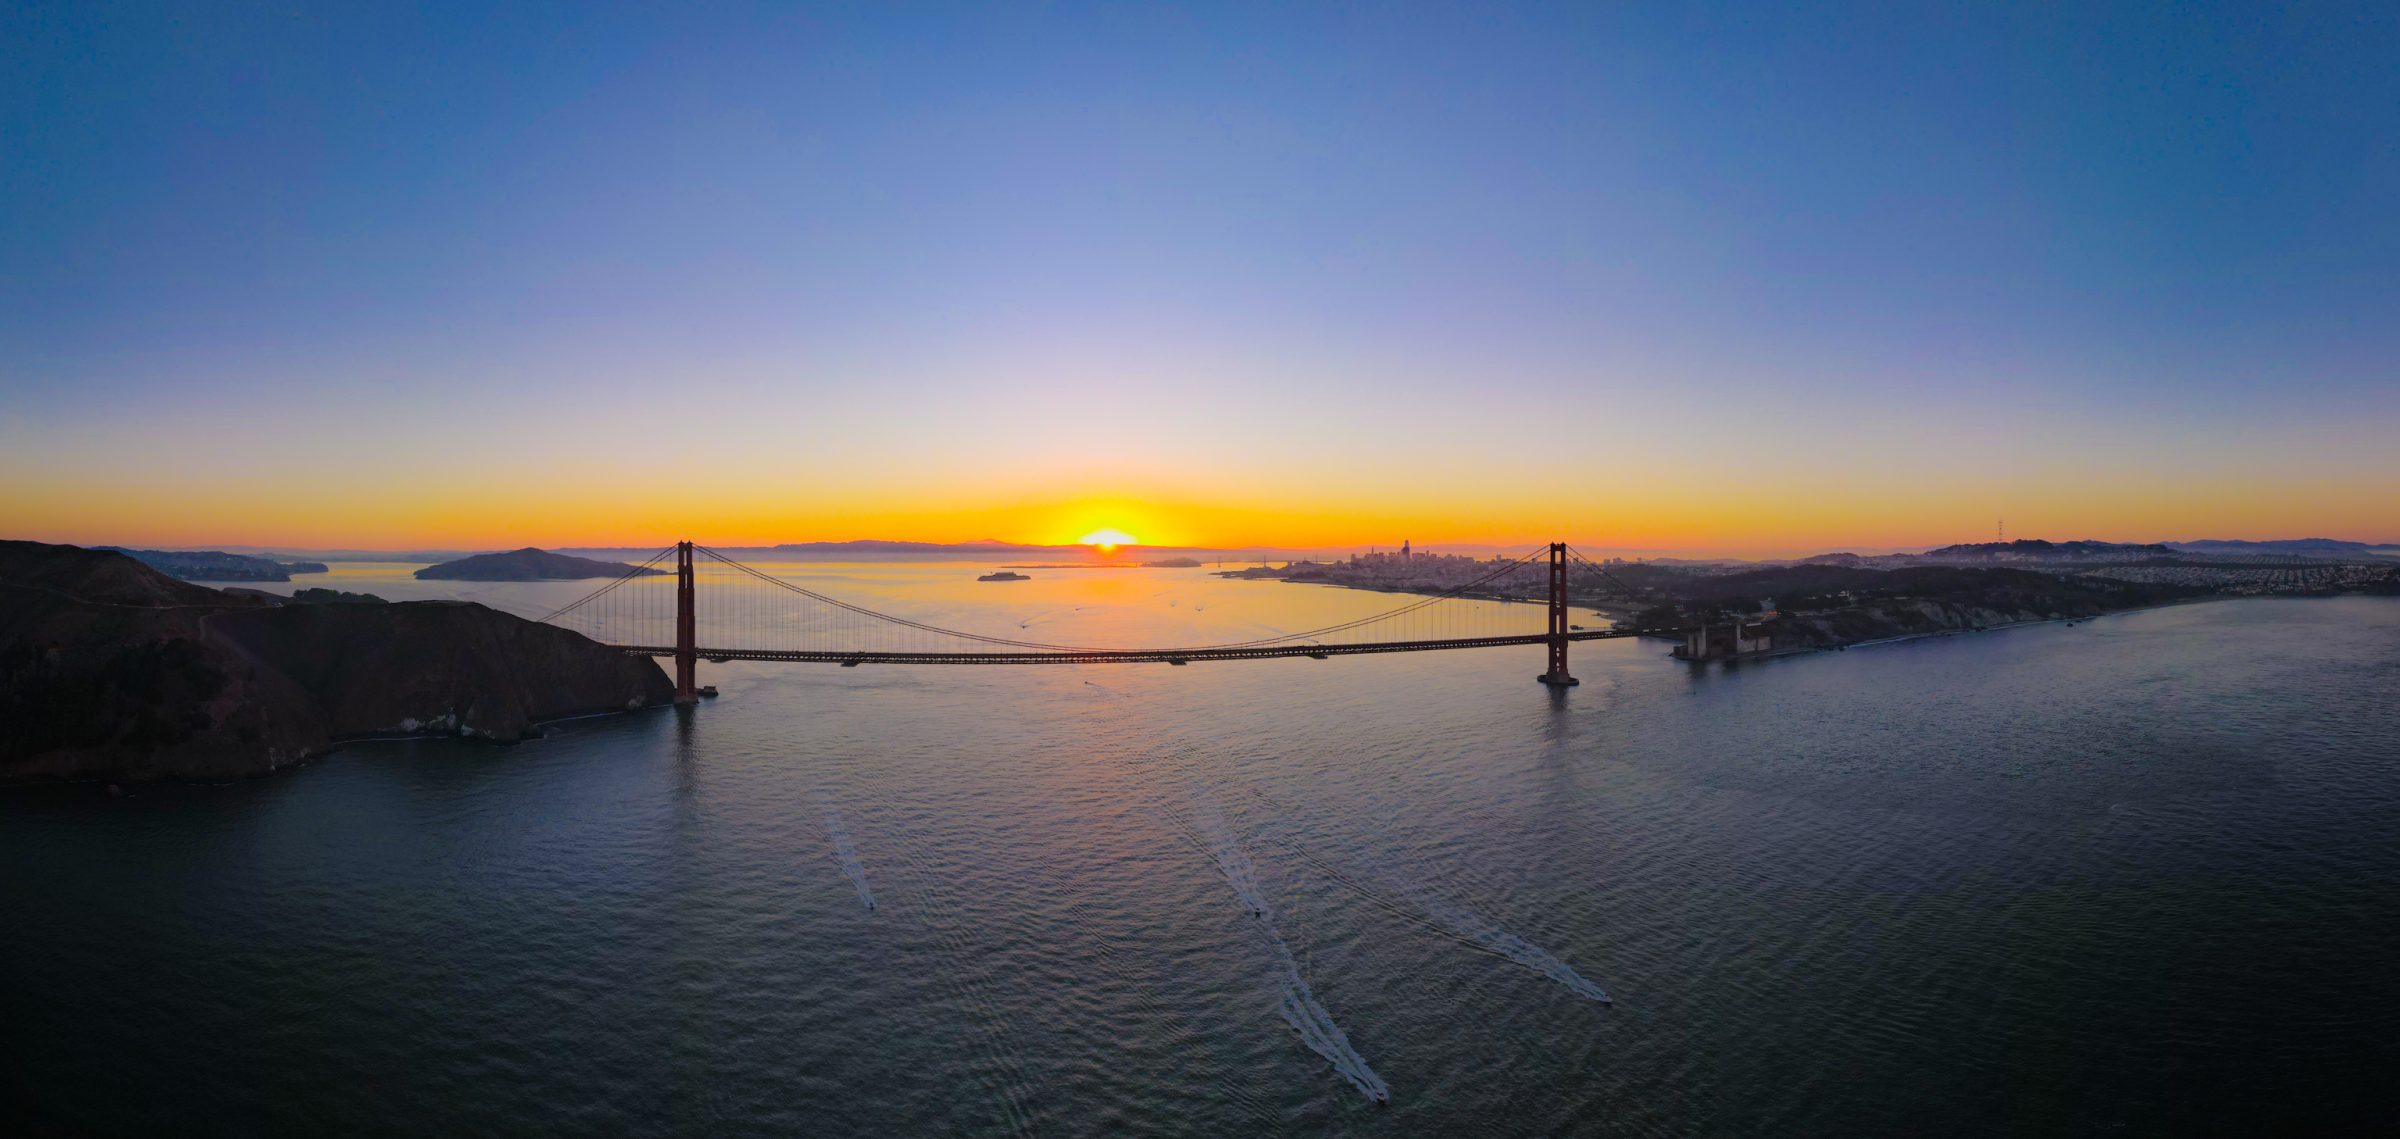 El puente Golden Gate y San Francisco al amanecer.